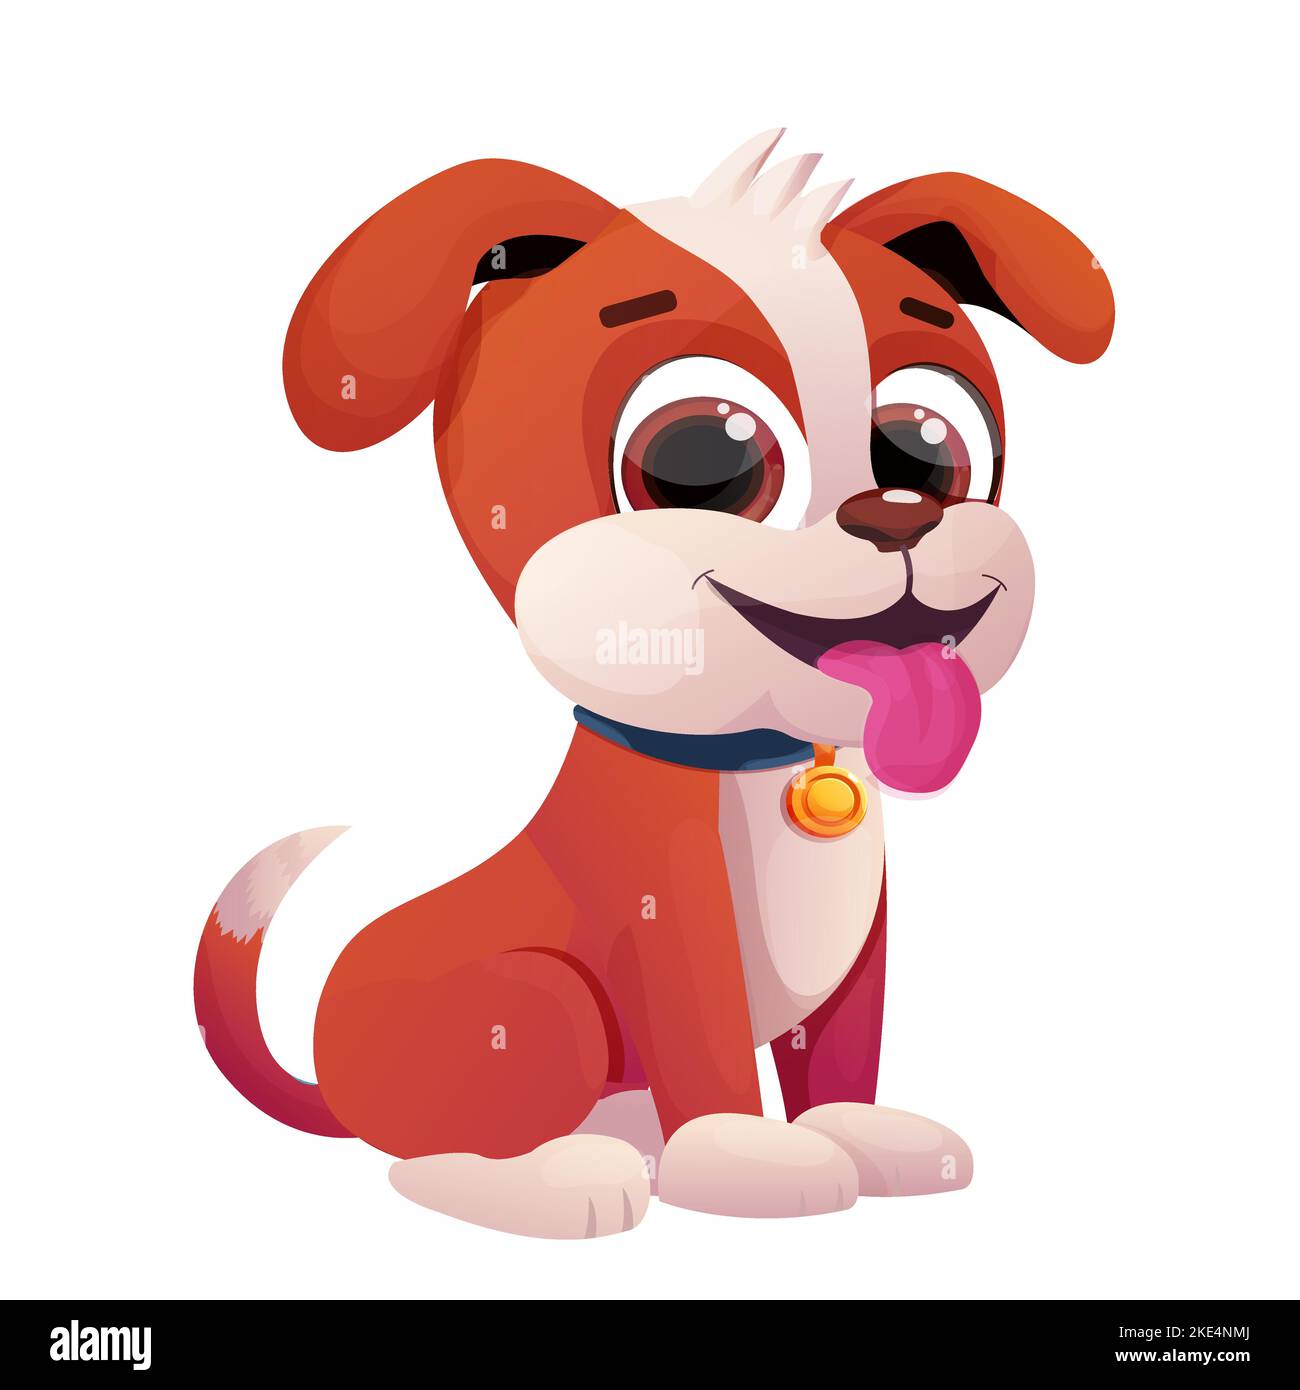 Cucciolo, carino cane bambino con colletto, lingua e adorabile coda in stile fumetto isolato su sfondo bianco. Illustrazione vettoriale Illustrazione Vettoriale